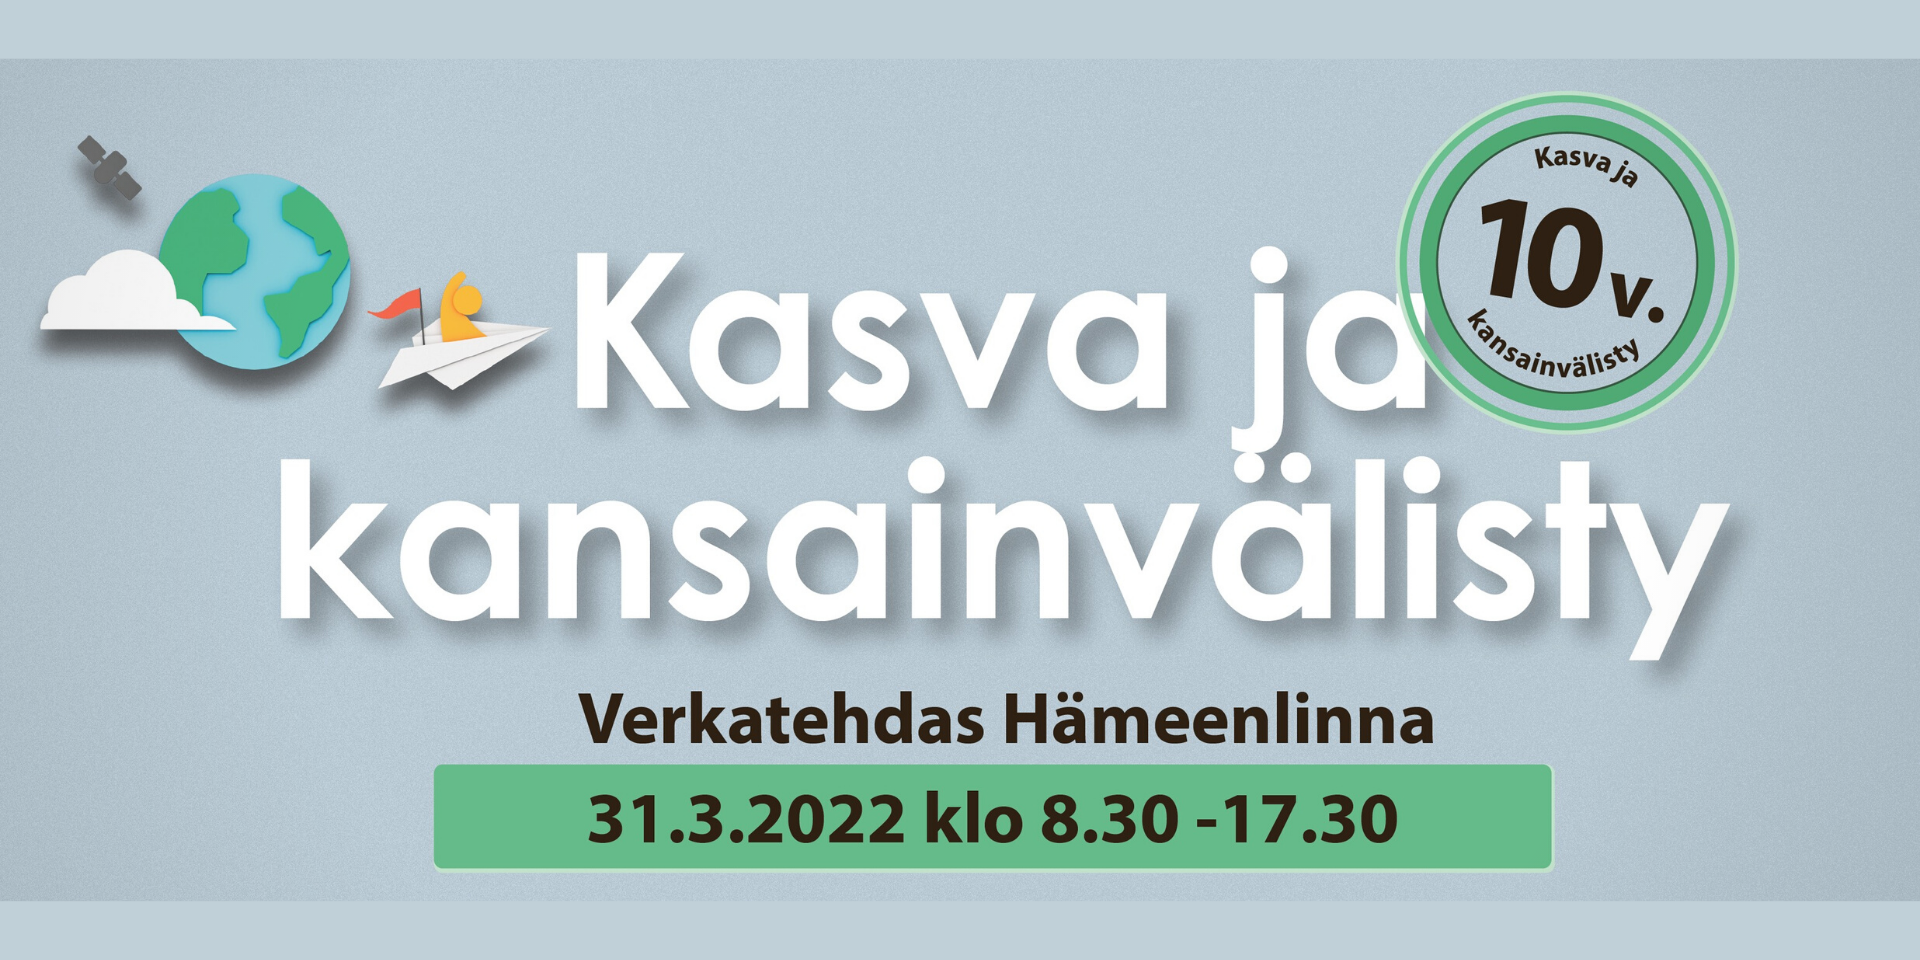 Kasva ja kansainvälisty -tapahtuma 31.3.2022 Hämeenlinnan Verkatehtalla.